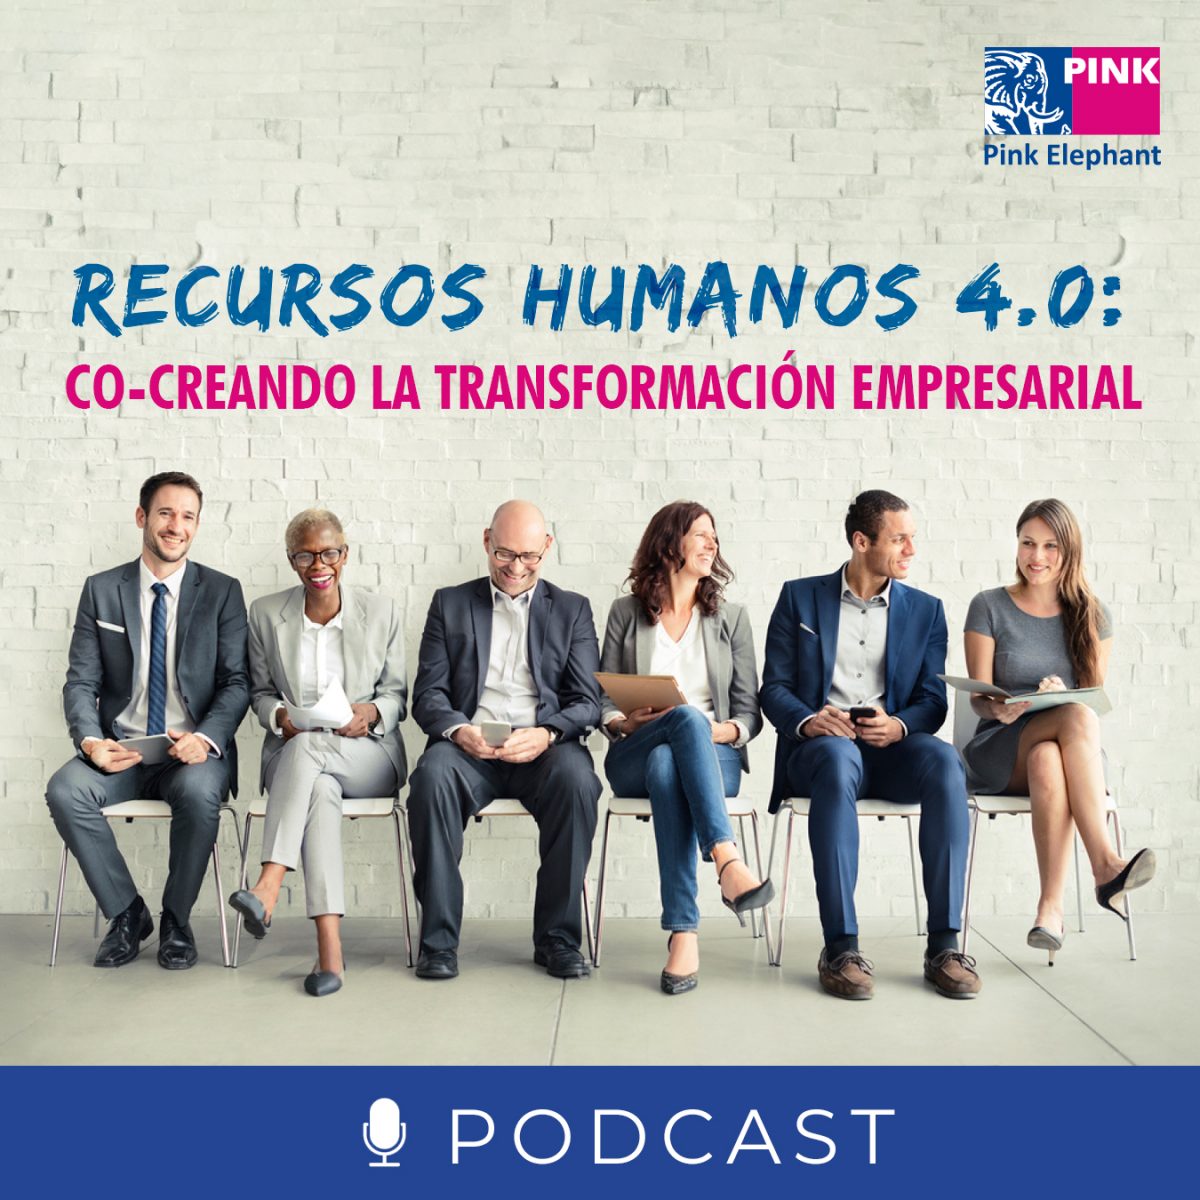 Video: Recursos Humanos 4.0, Co-creando la Transformación Empresarial